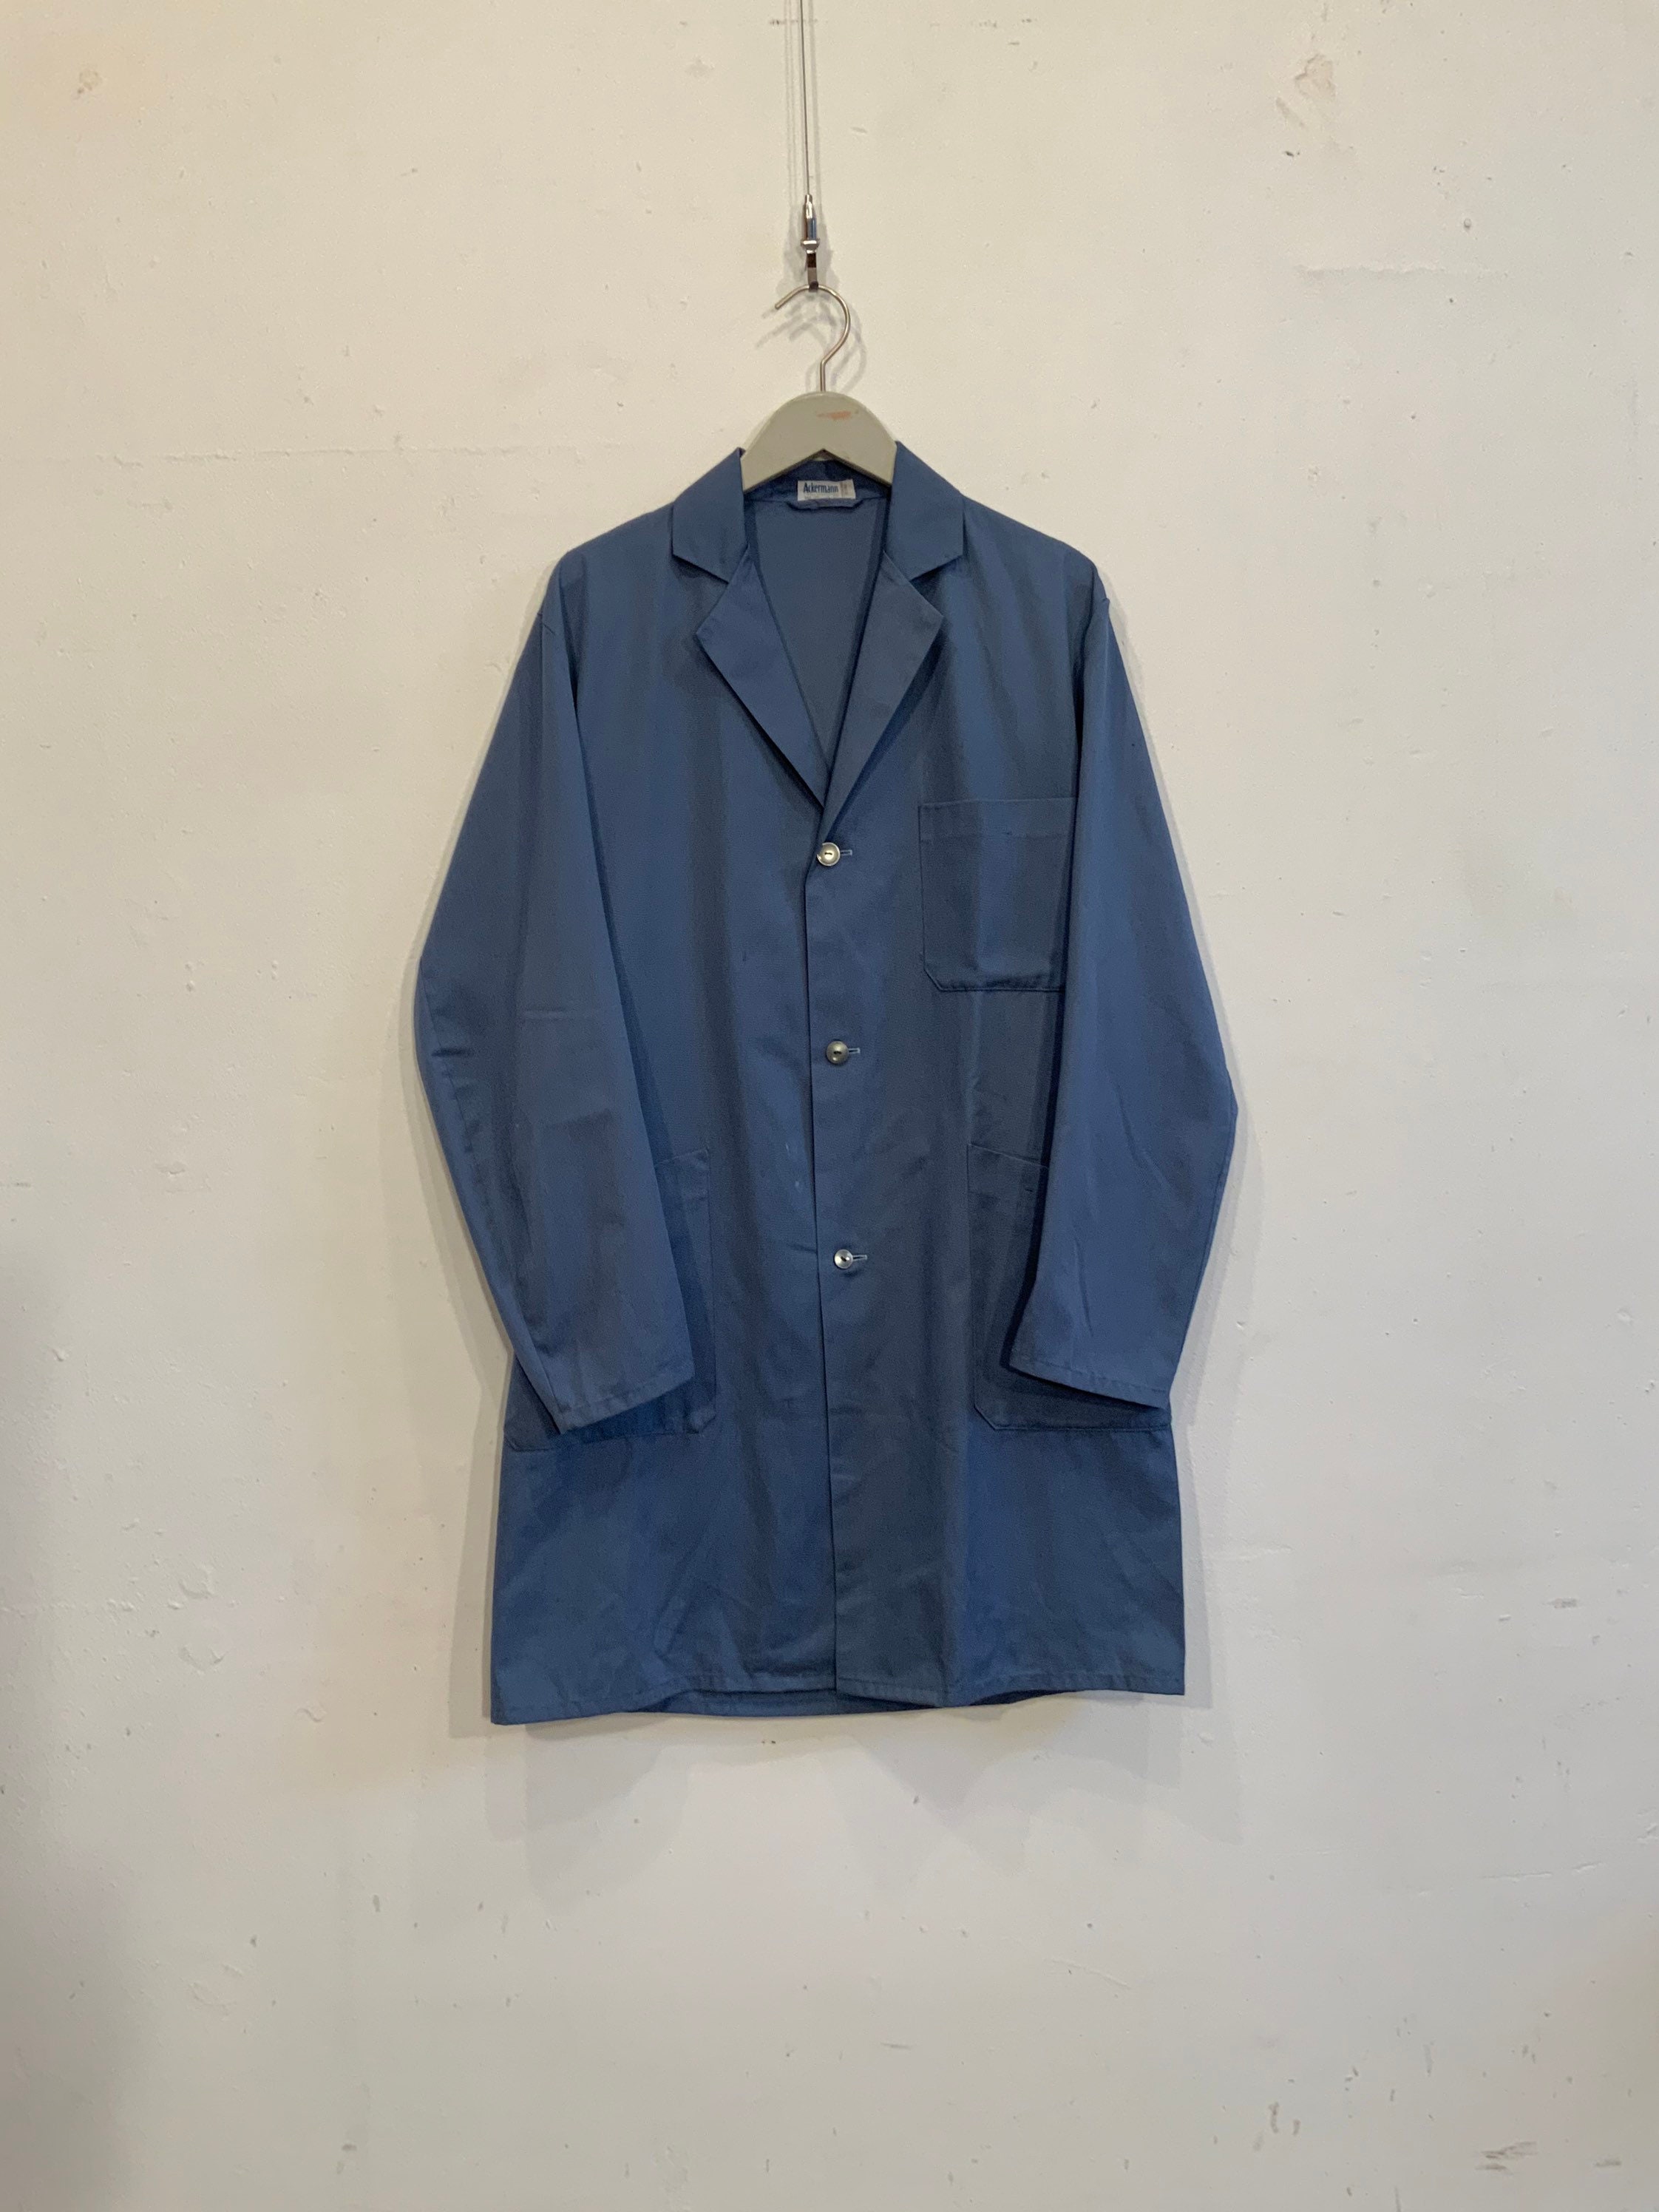 French Workwear Overshirt/jacket in Soft Indigo Cotton Great - Etsy